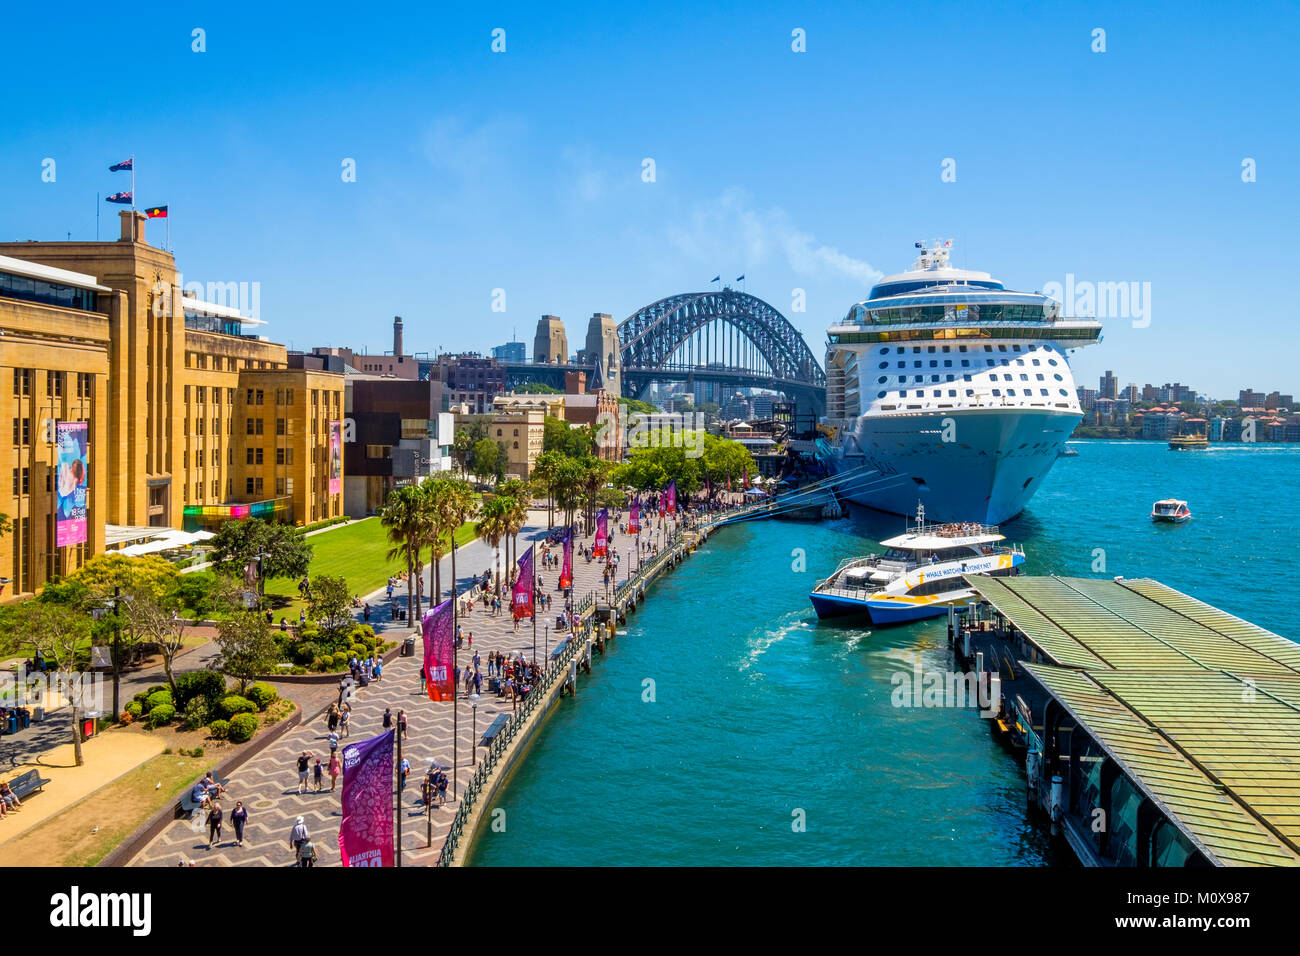 Royal Caribbean è ovazione dei mari nave da crociera ormeggiata al Terminal Passeggeri Oltreoceano in Circular Quay, Sydney, Australia in una giornata di sole. Foto Stock